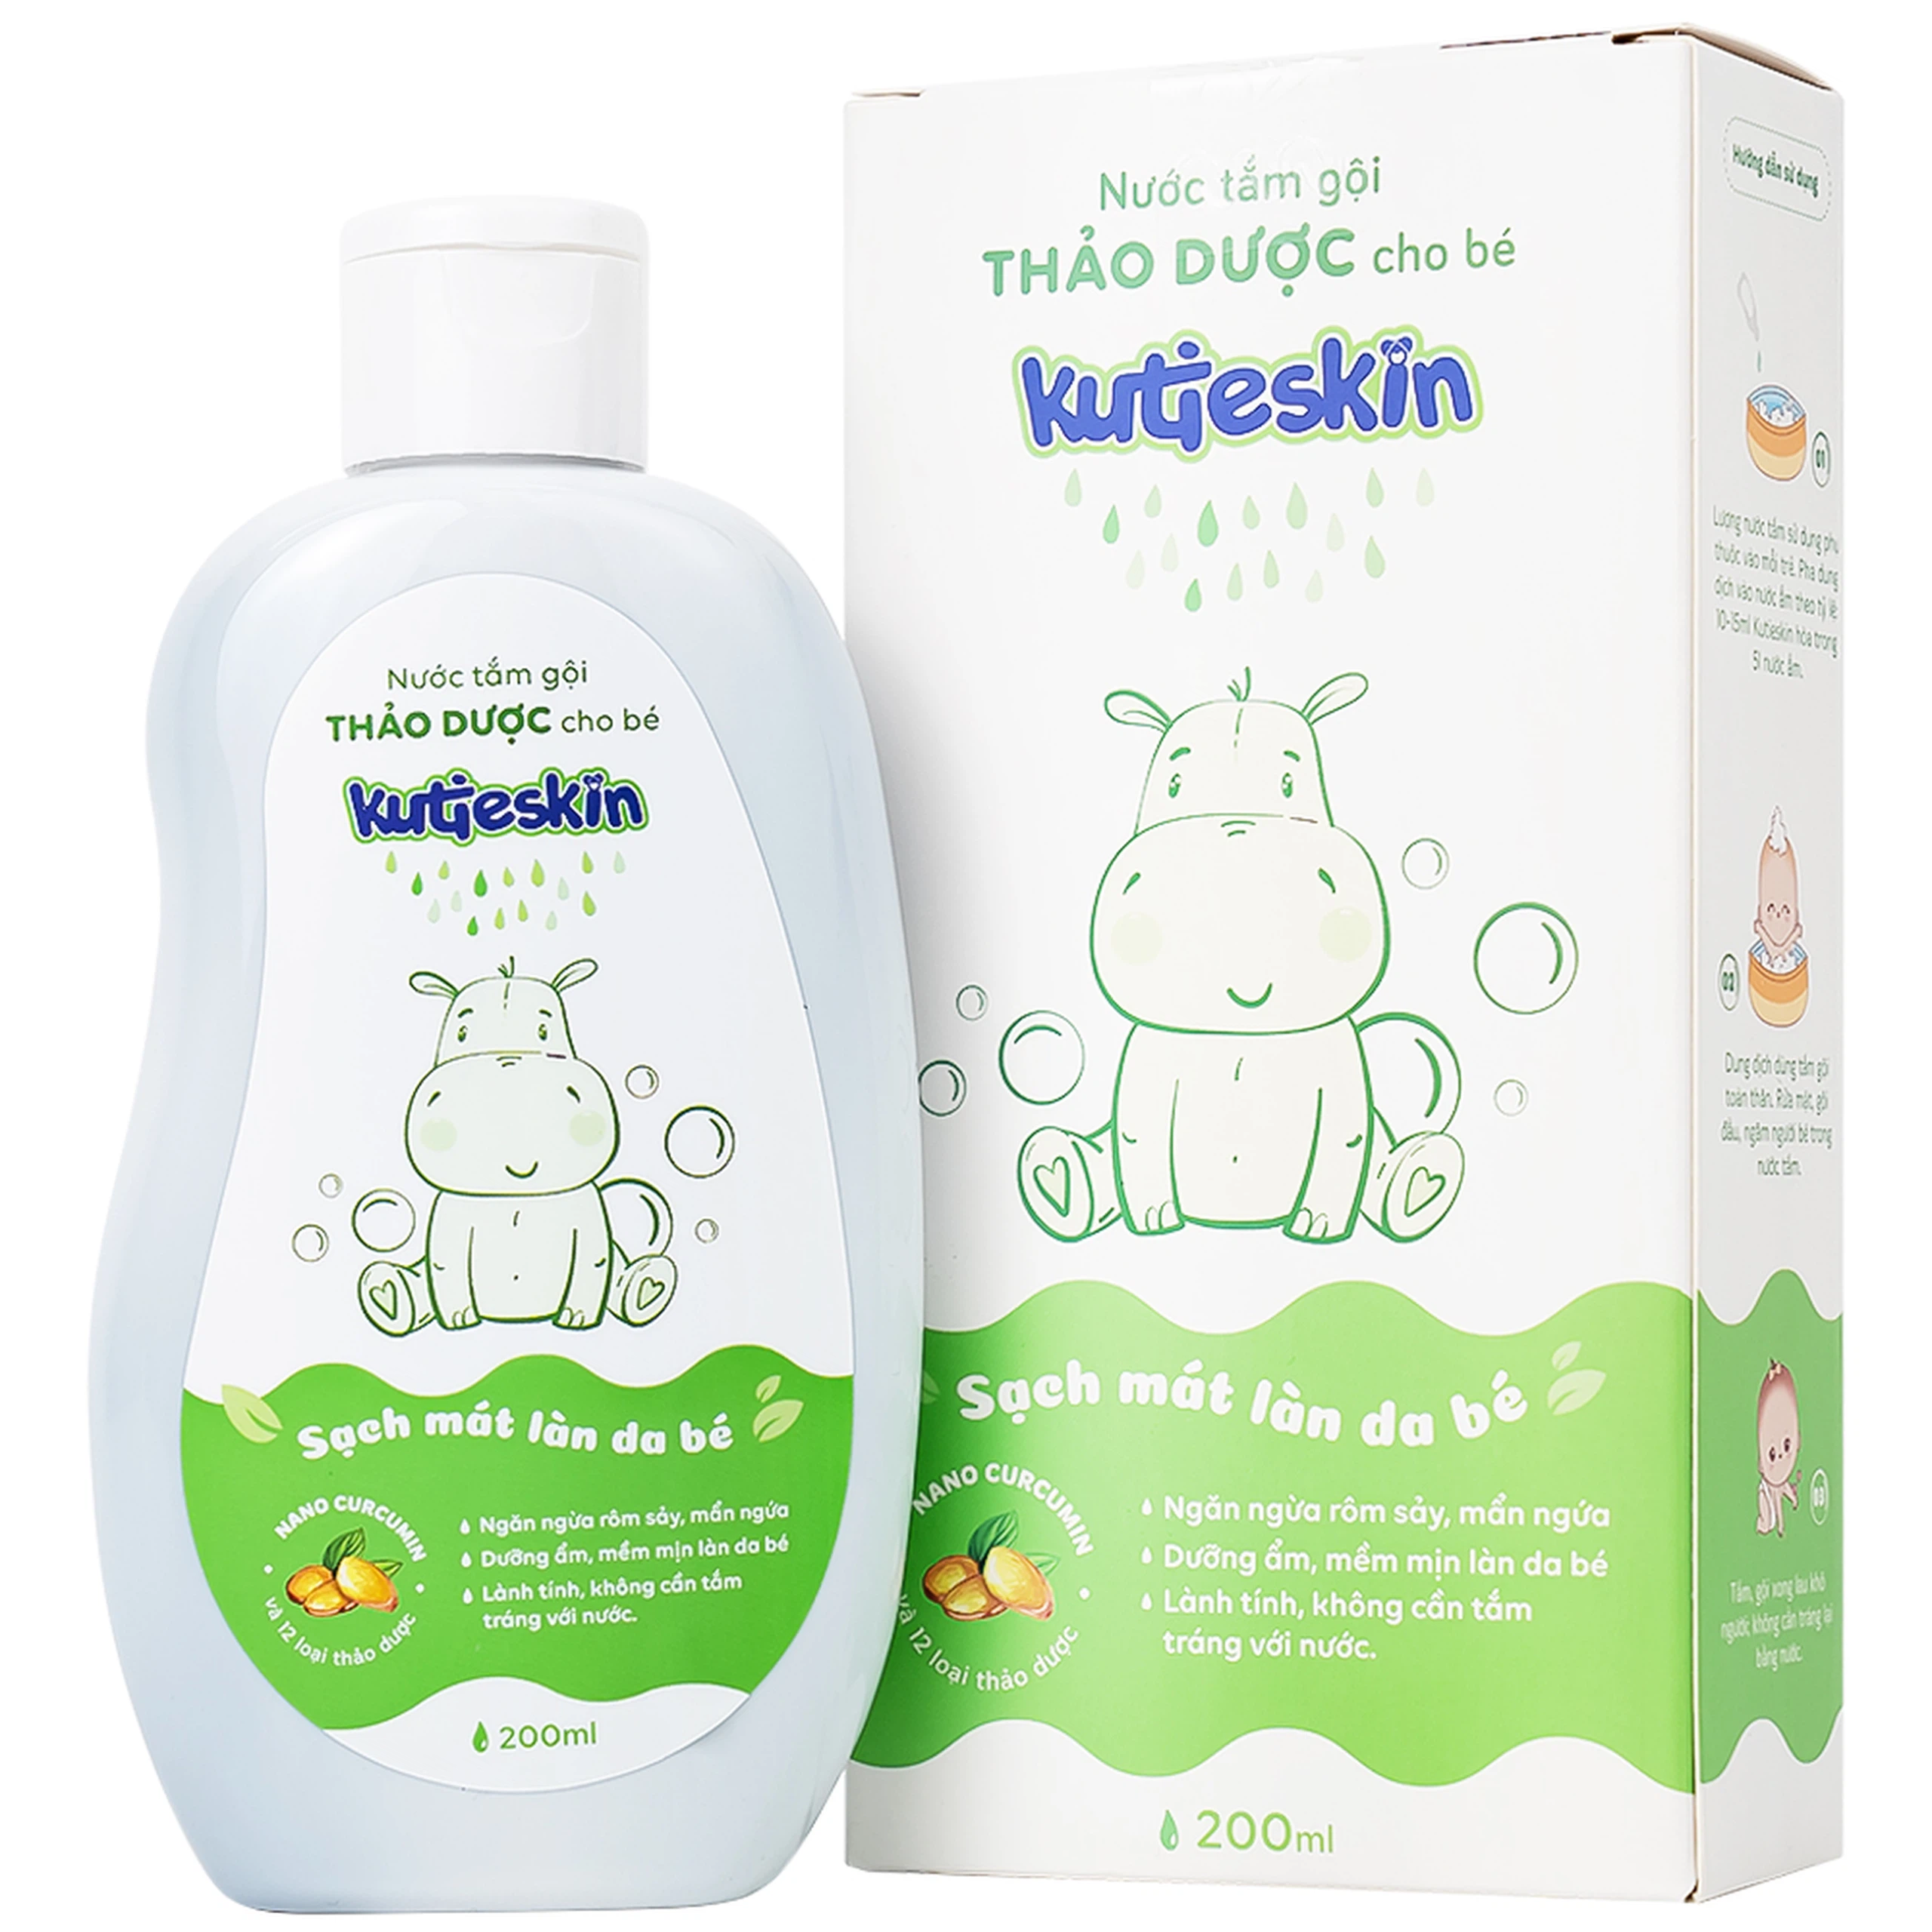 Nước tắm gội Thảo Dược cho bé Kutieskin ngăn ngừa rôm sảy, mẩn ngứa, giúp dưỡng ẩm da bé (200ml)